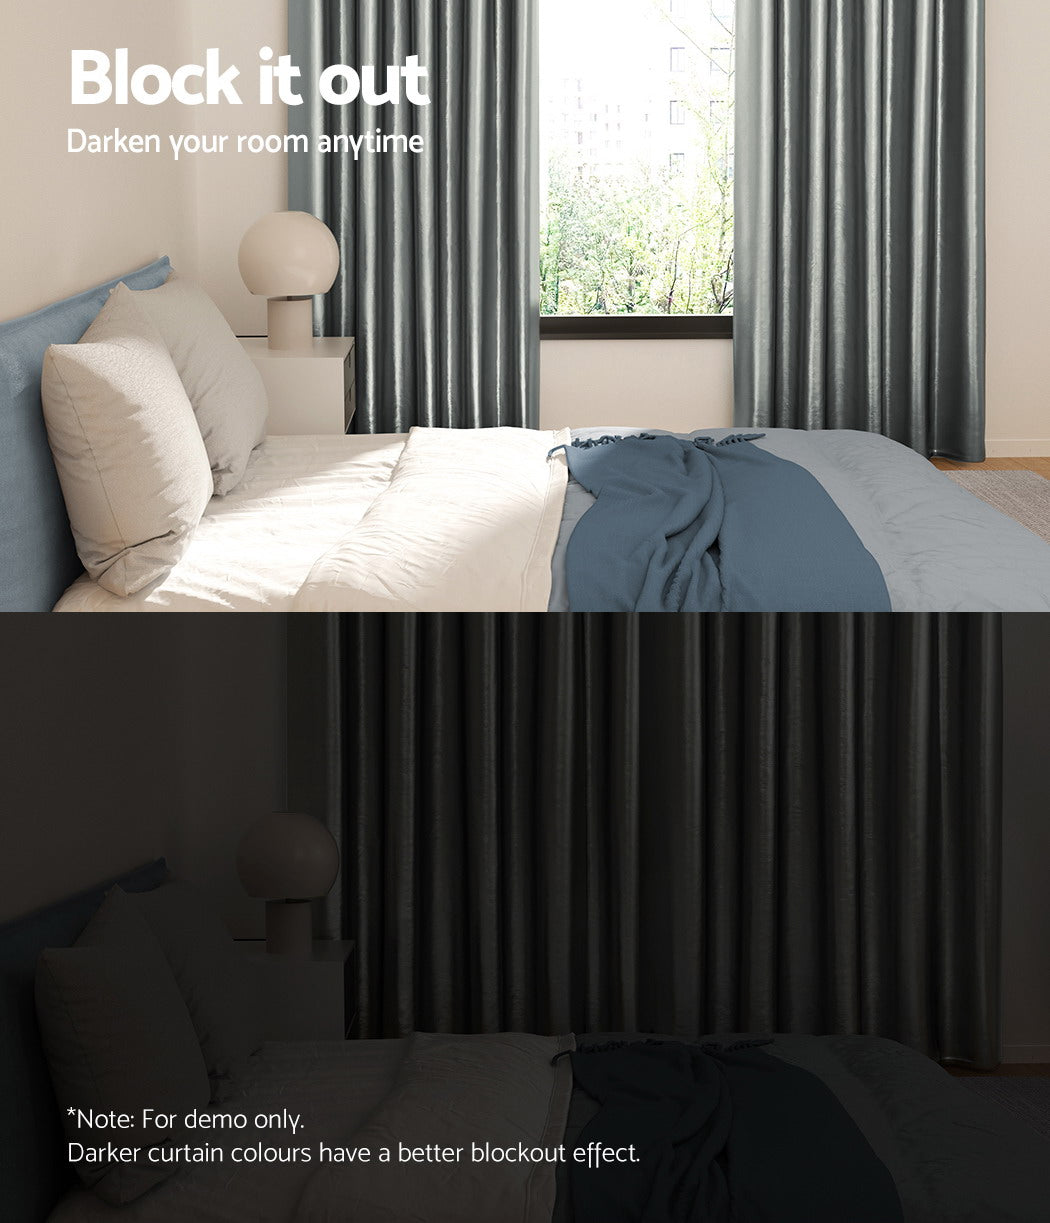 Set of 2 Blockout Curtains Blackout Window Curtain Eyelet 240x230cm Grey Shine